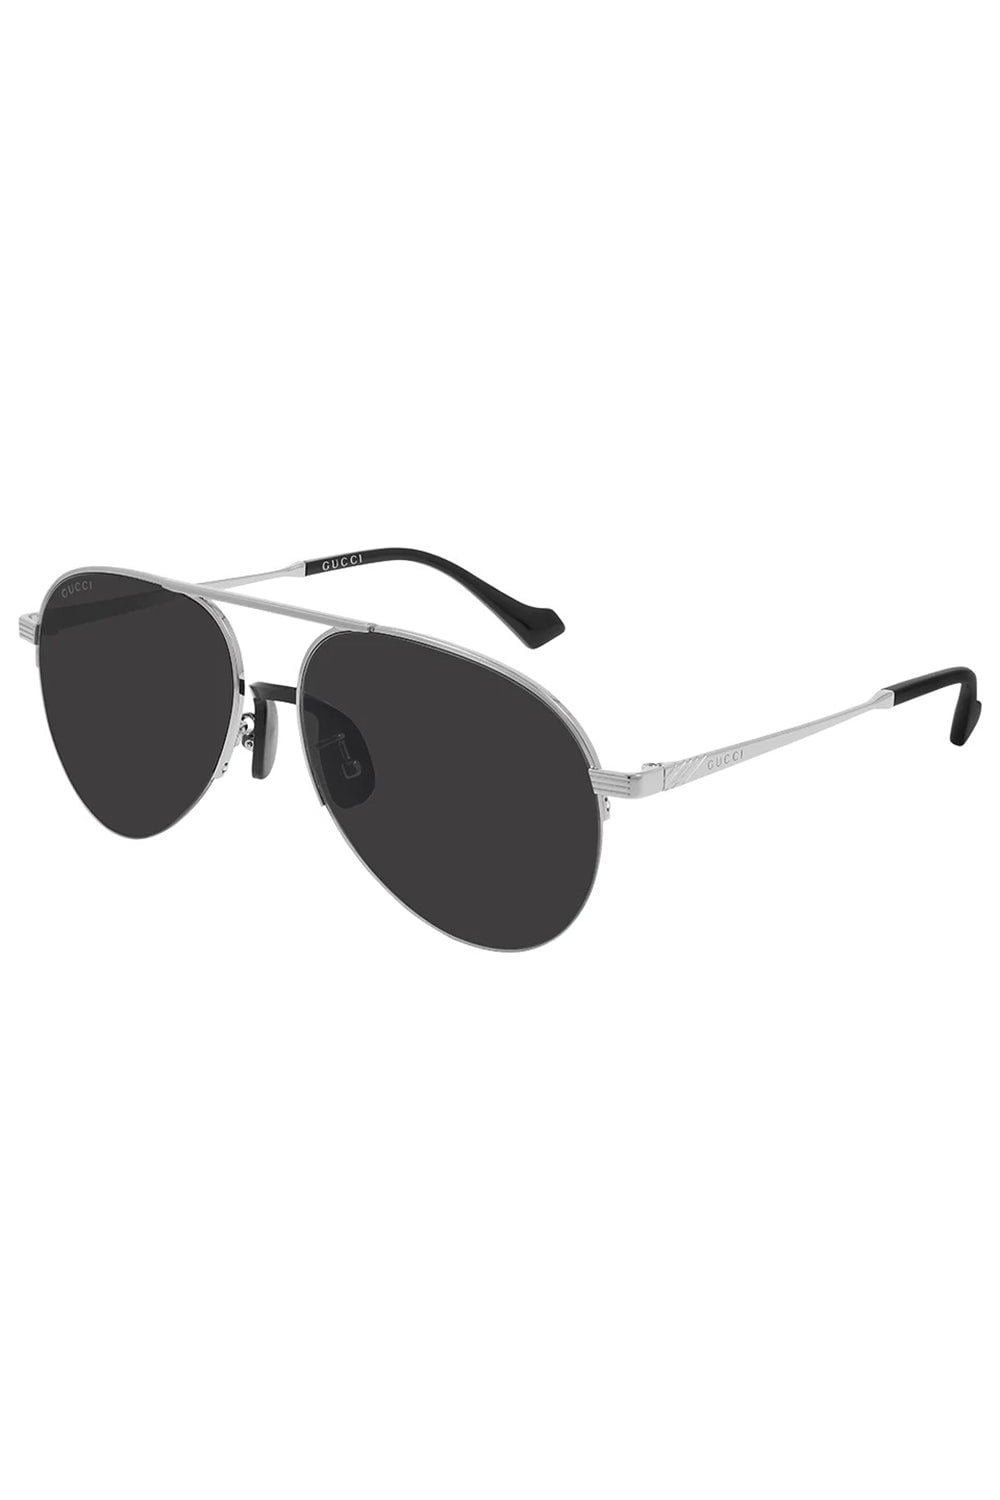 GUCCI-Aviator Sunglasses - Silver-SILVER